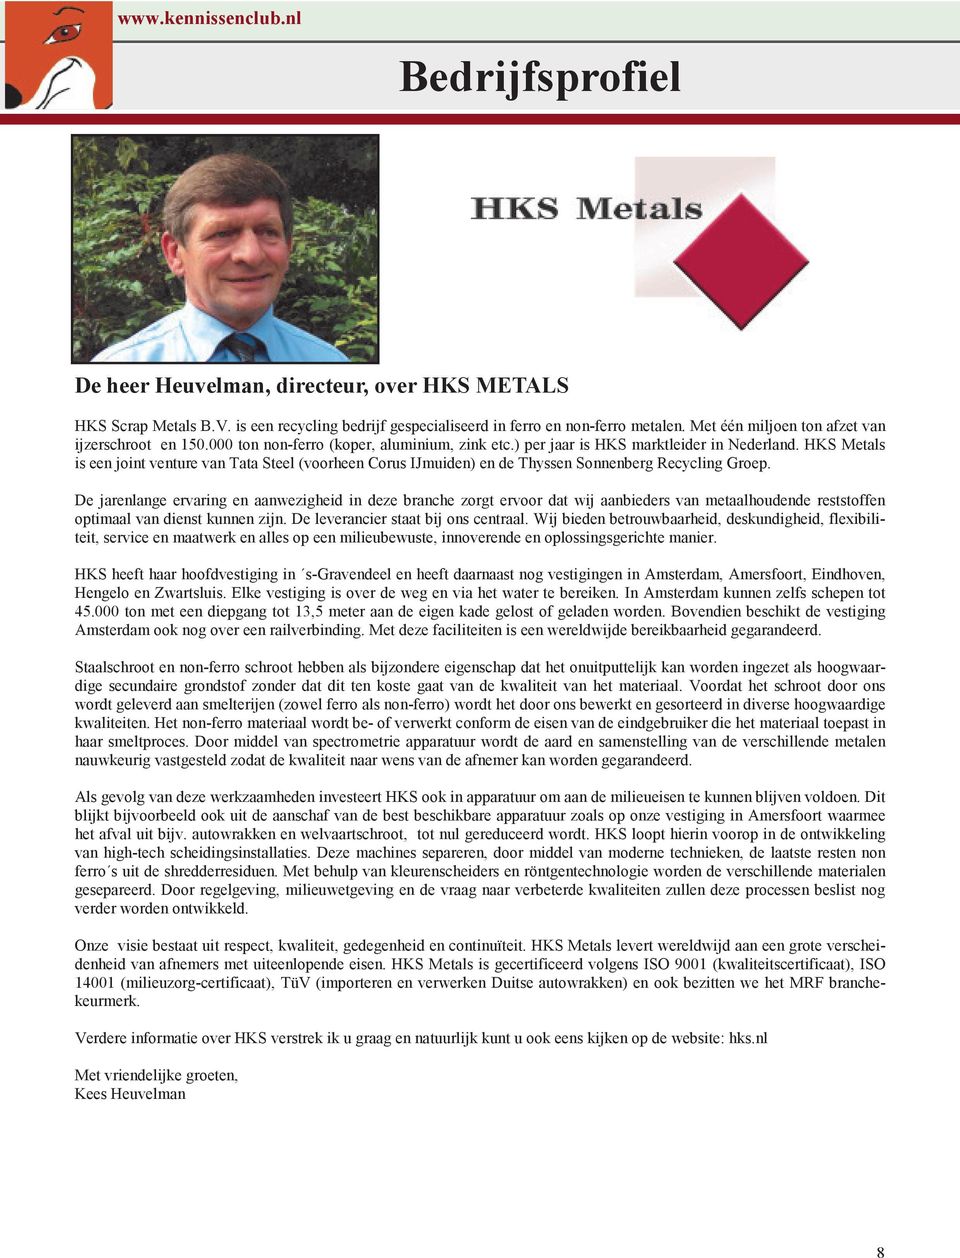 HKS Metals is een joint venture van Tata Steel (voorheen Corus IJmuiden) en de Thyssen Sonnenberg Recycling Groep.